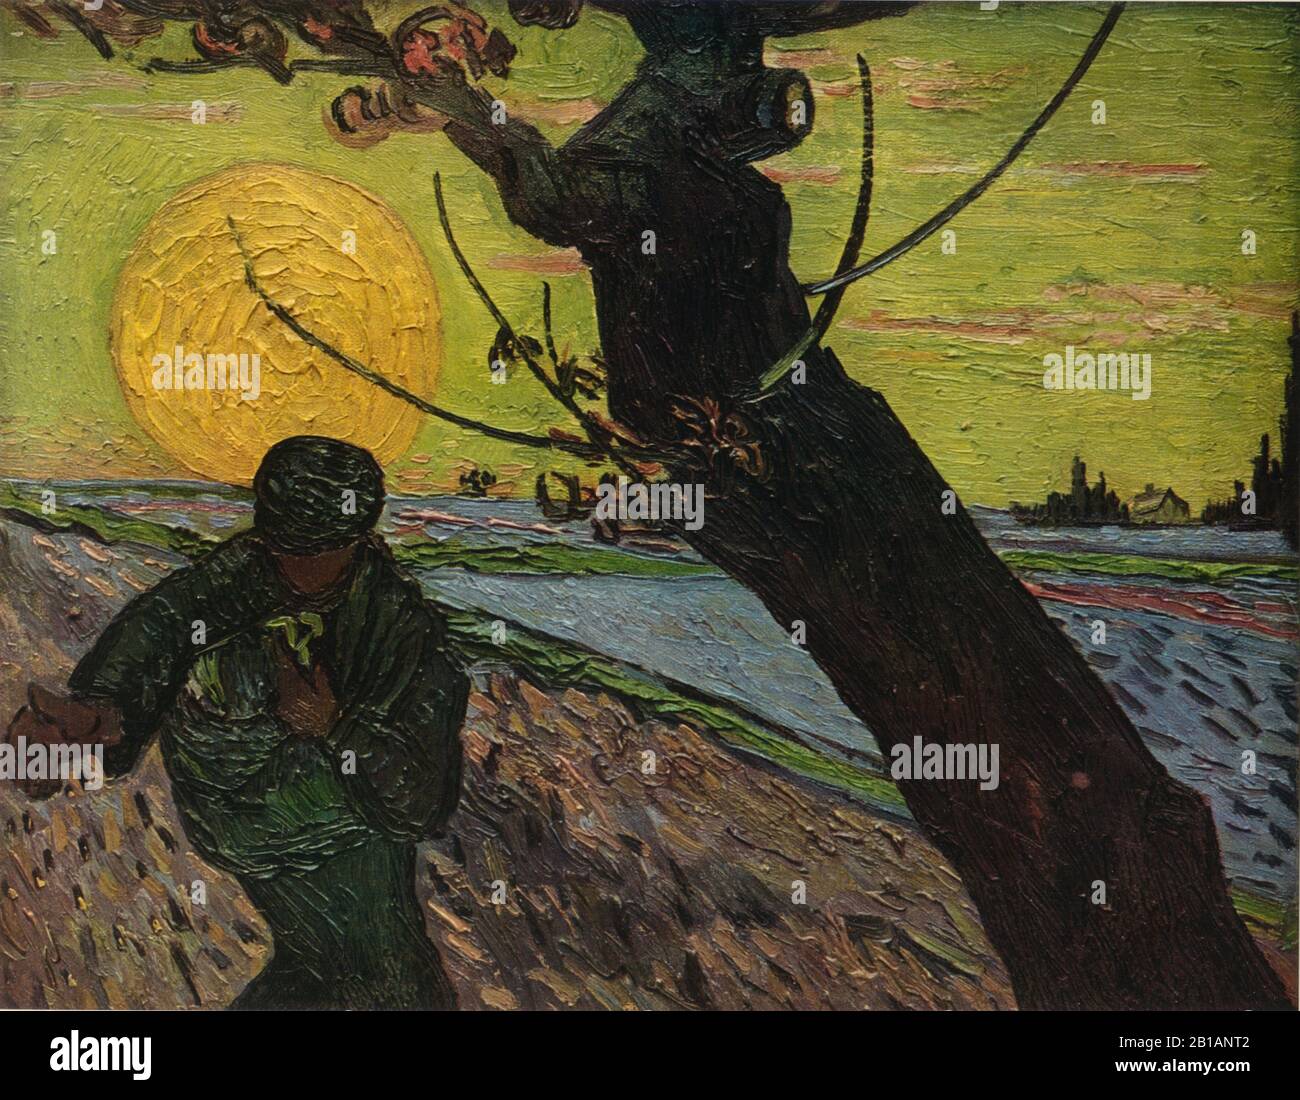 The Sower, 1888 - dipinto di Vincent van Gogh - immagine Ad Altissima risoluzione e qualità Foto Stock